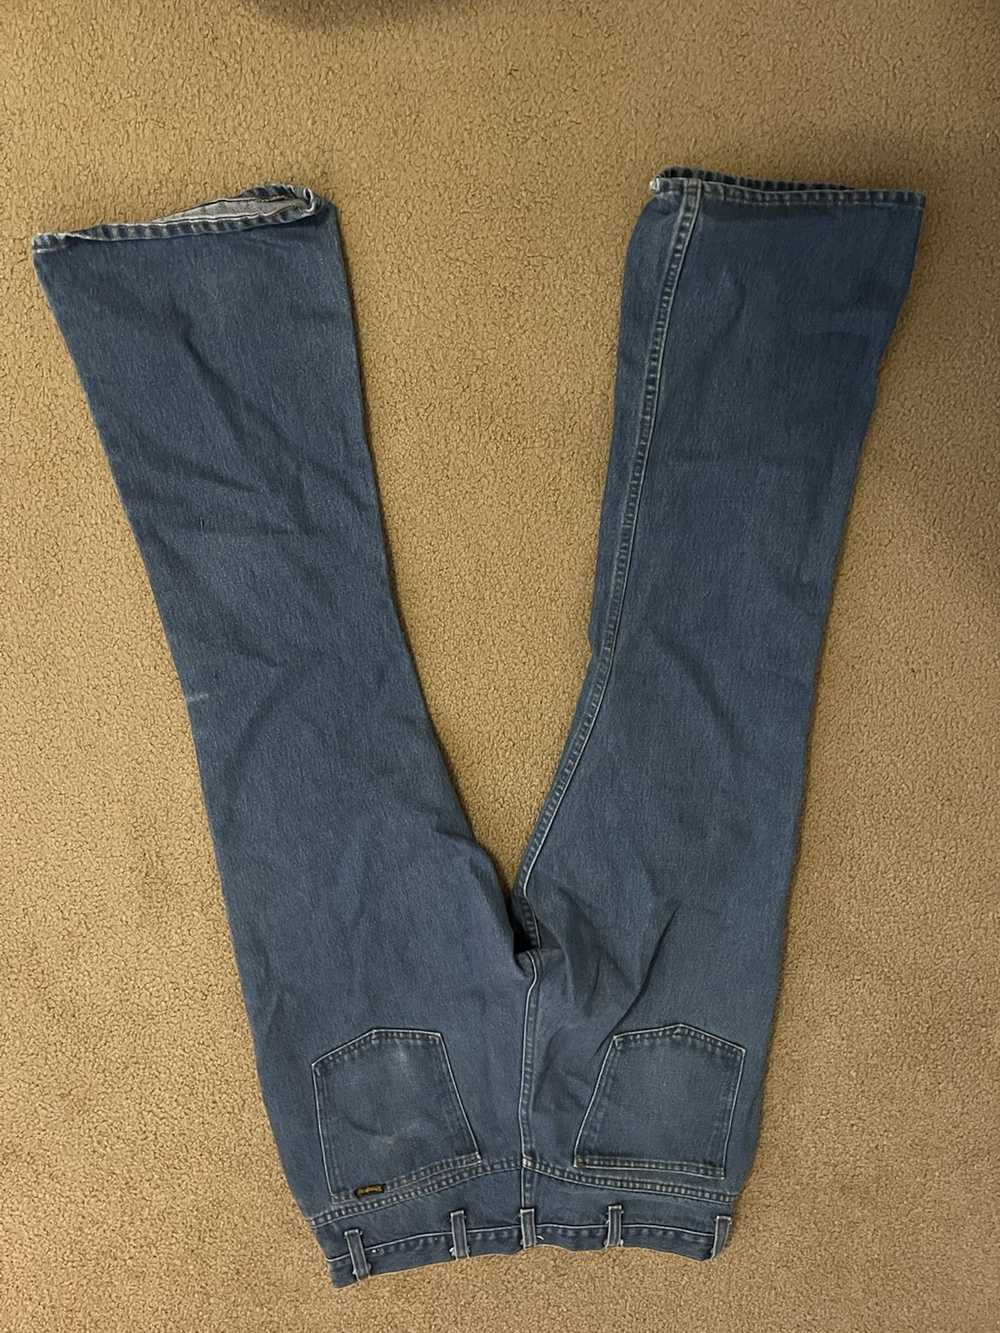 Vintage Vintage Flared Jeans - image 2